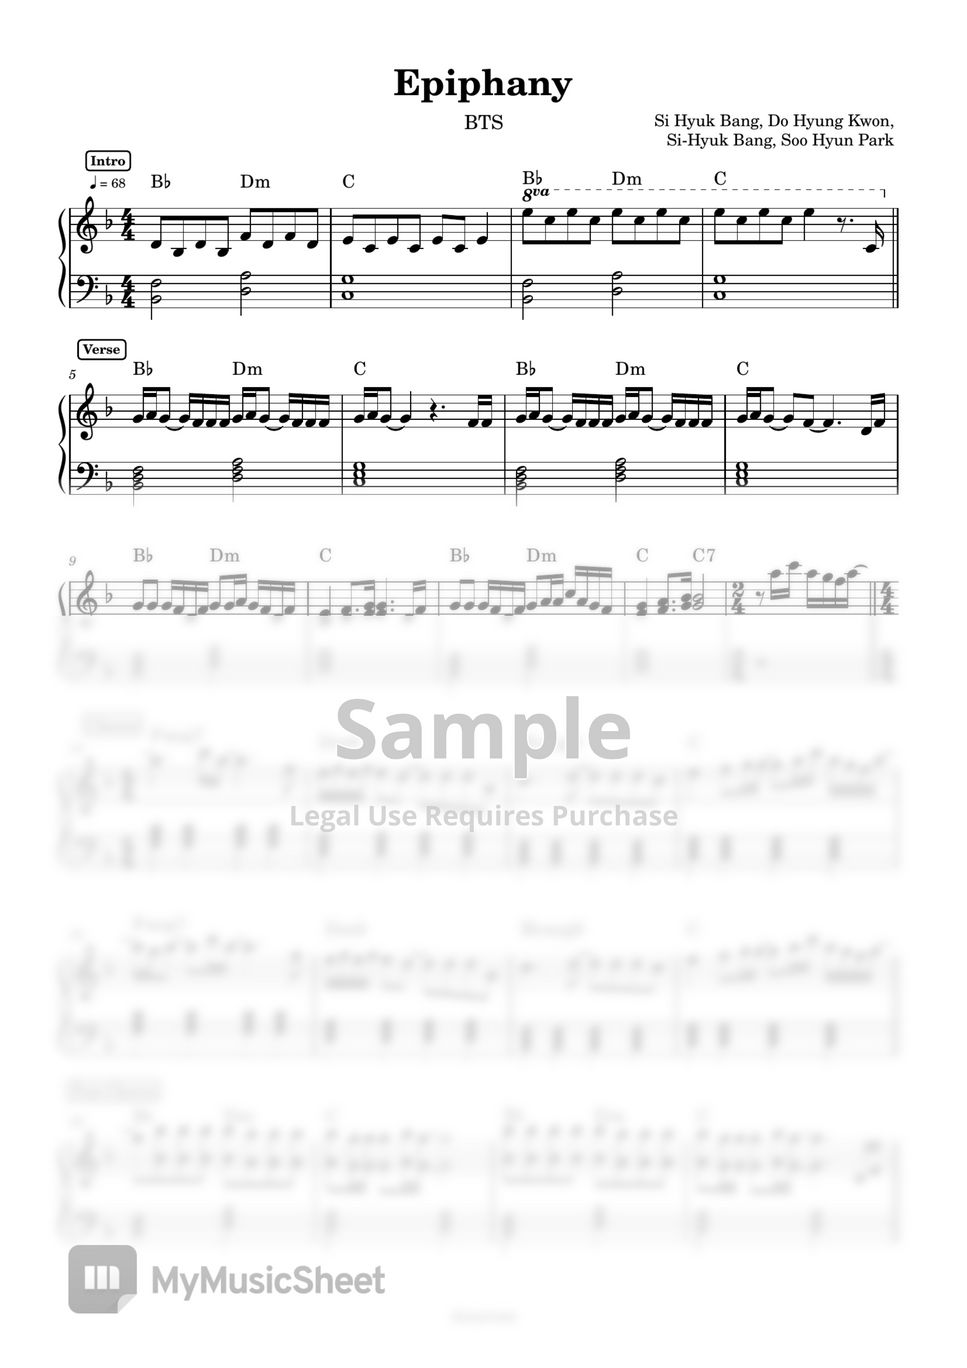 BTS - Epiphany (Piano) by Anacrusa